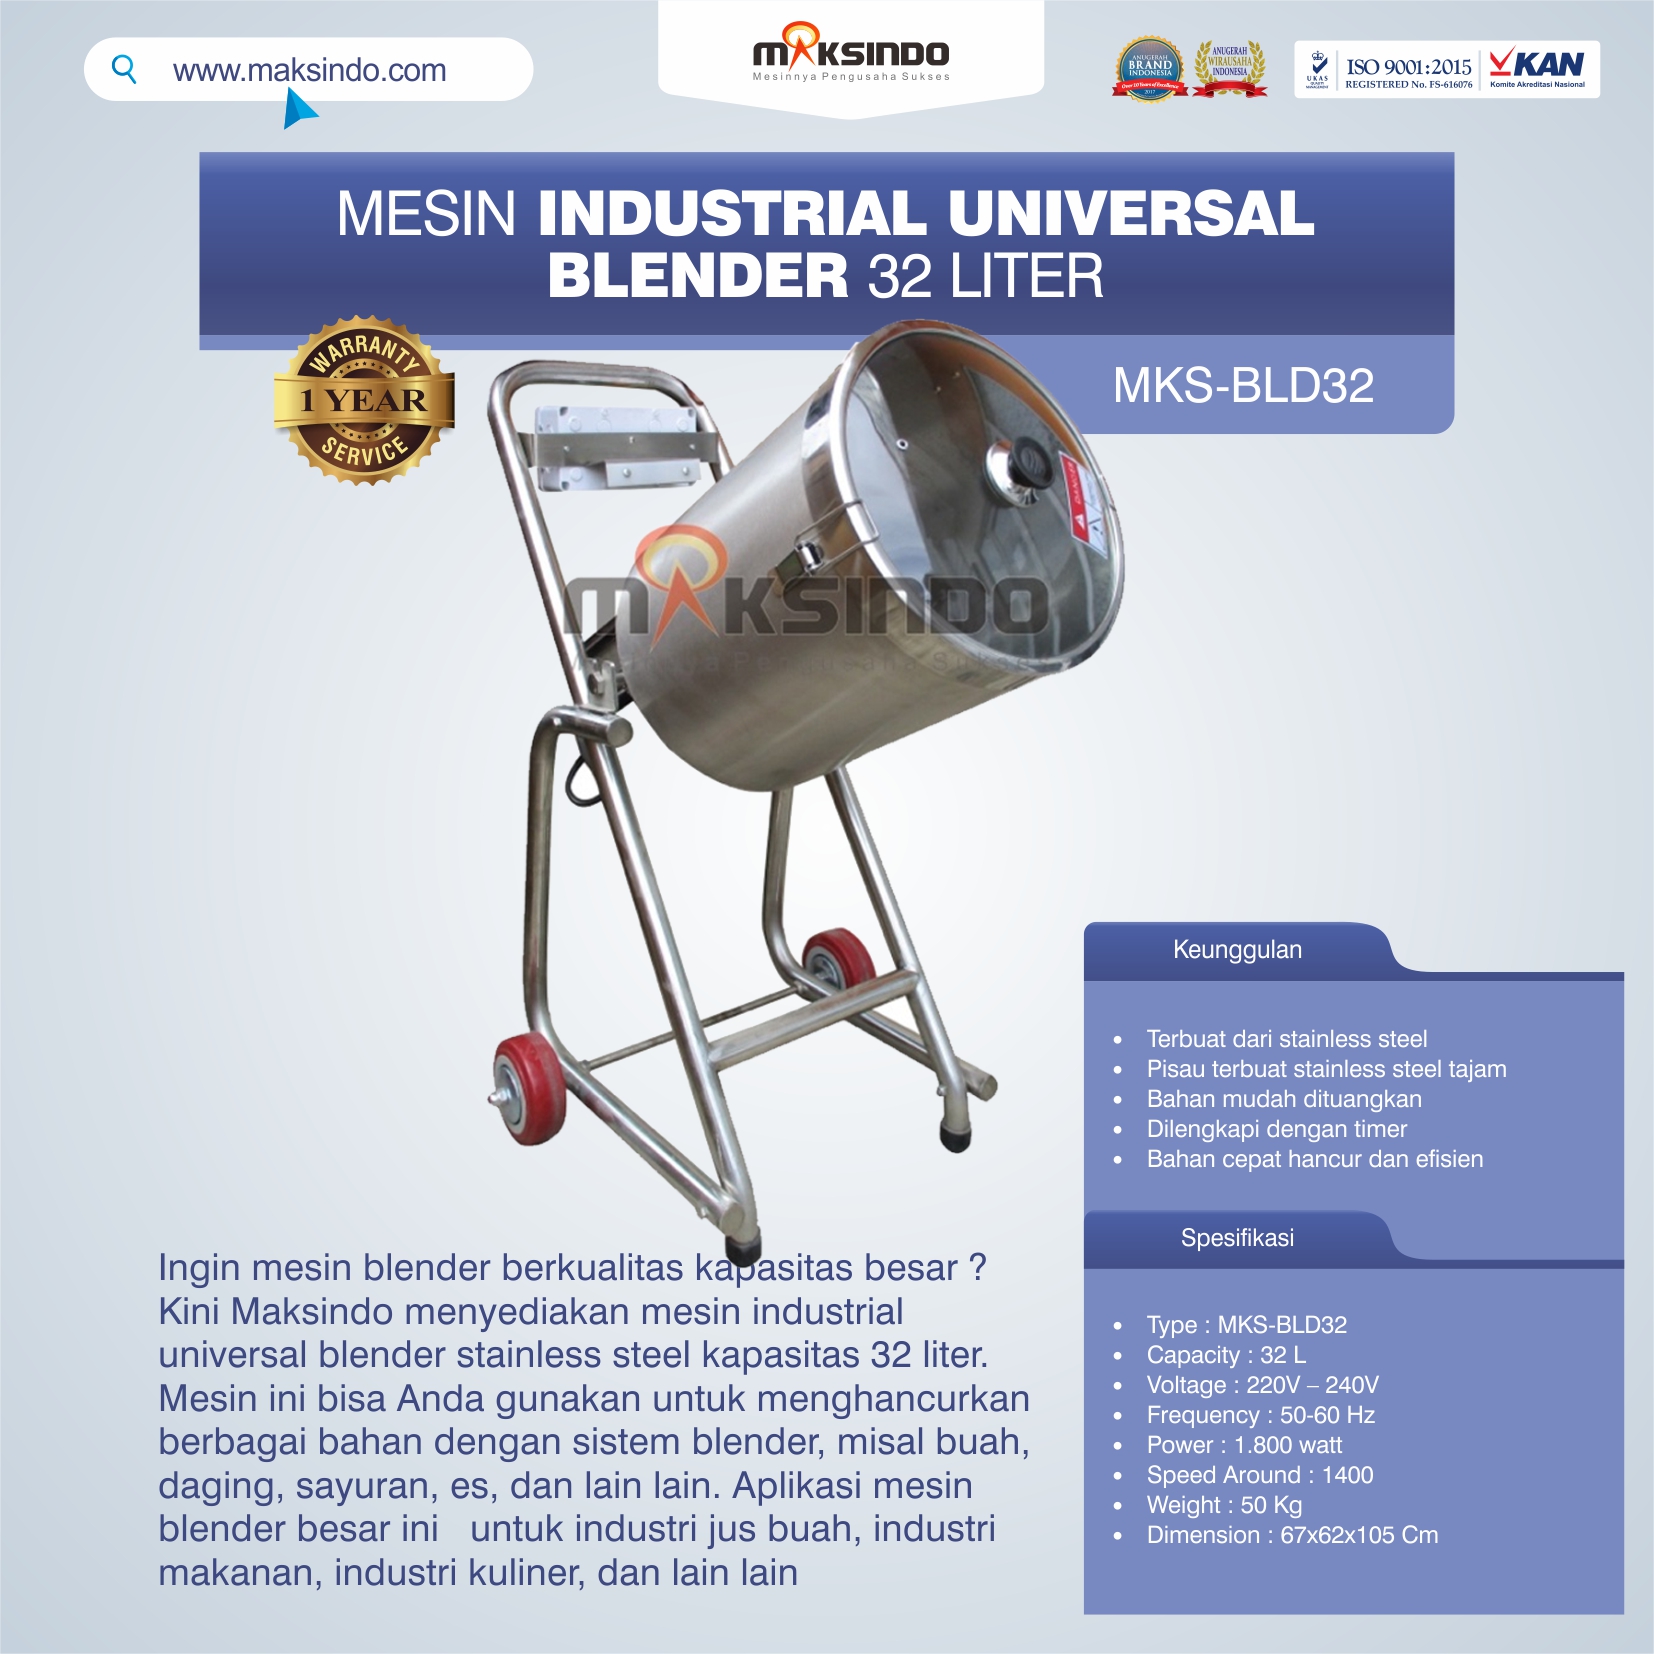 Jual Industrial Universal Blender 32 Liter di Semarang